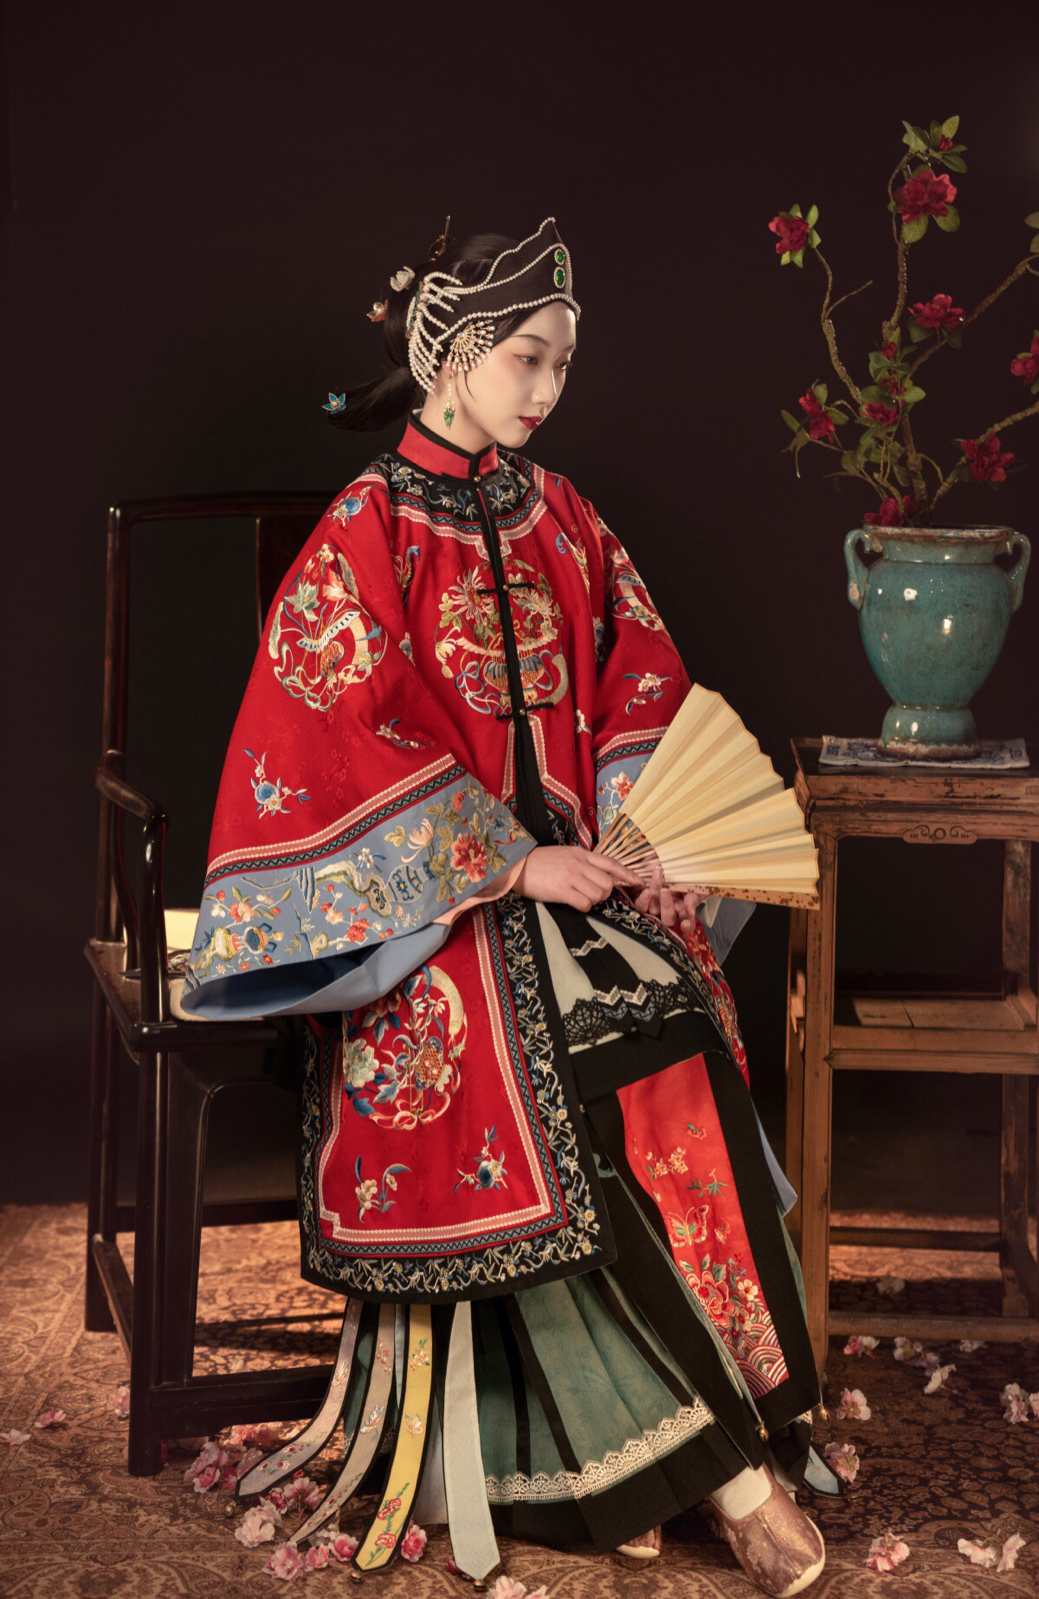 整理那些历史遗留的传统女性汉族服饰和发型 - 知乎